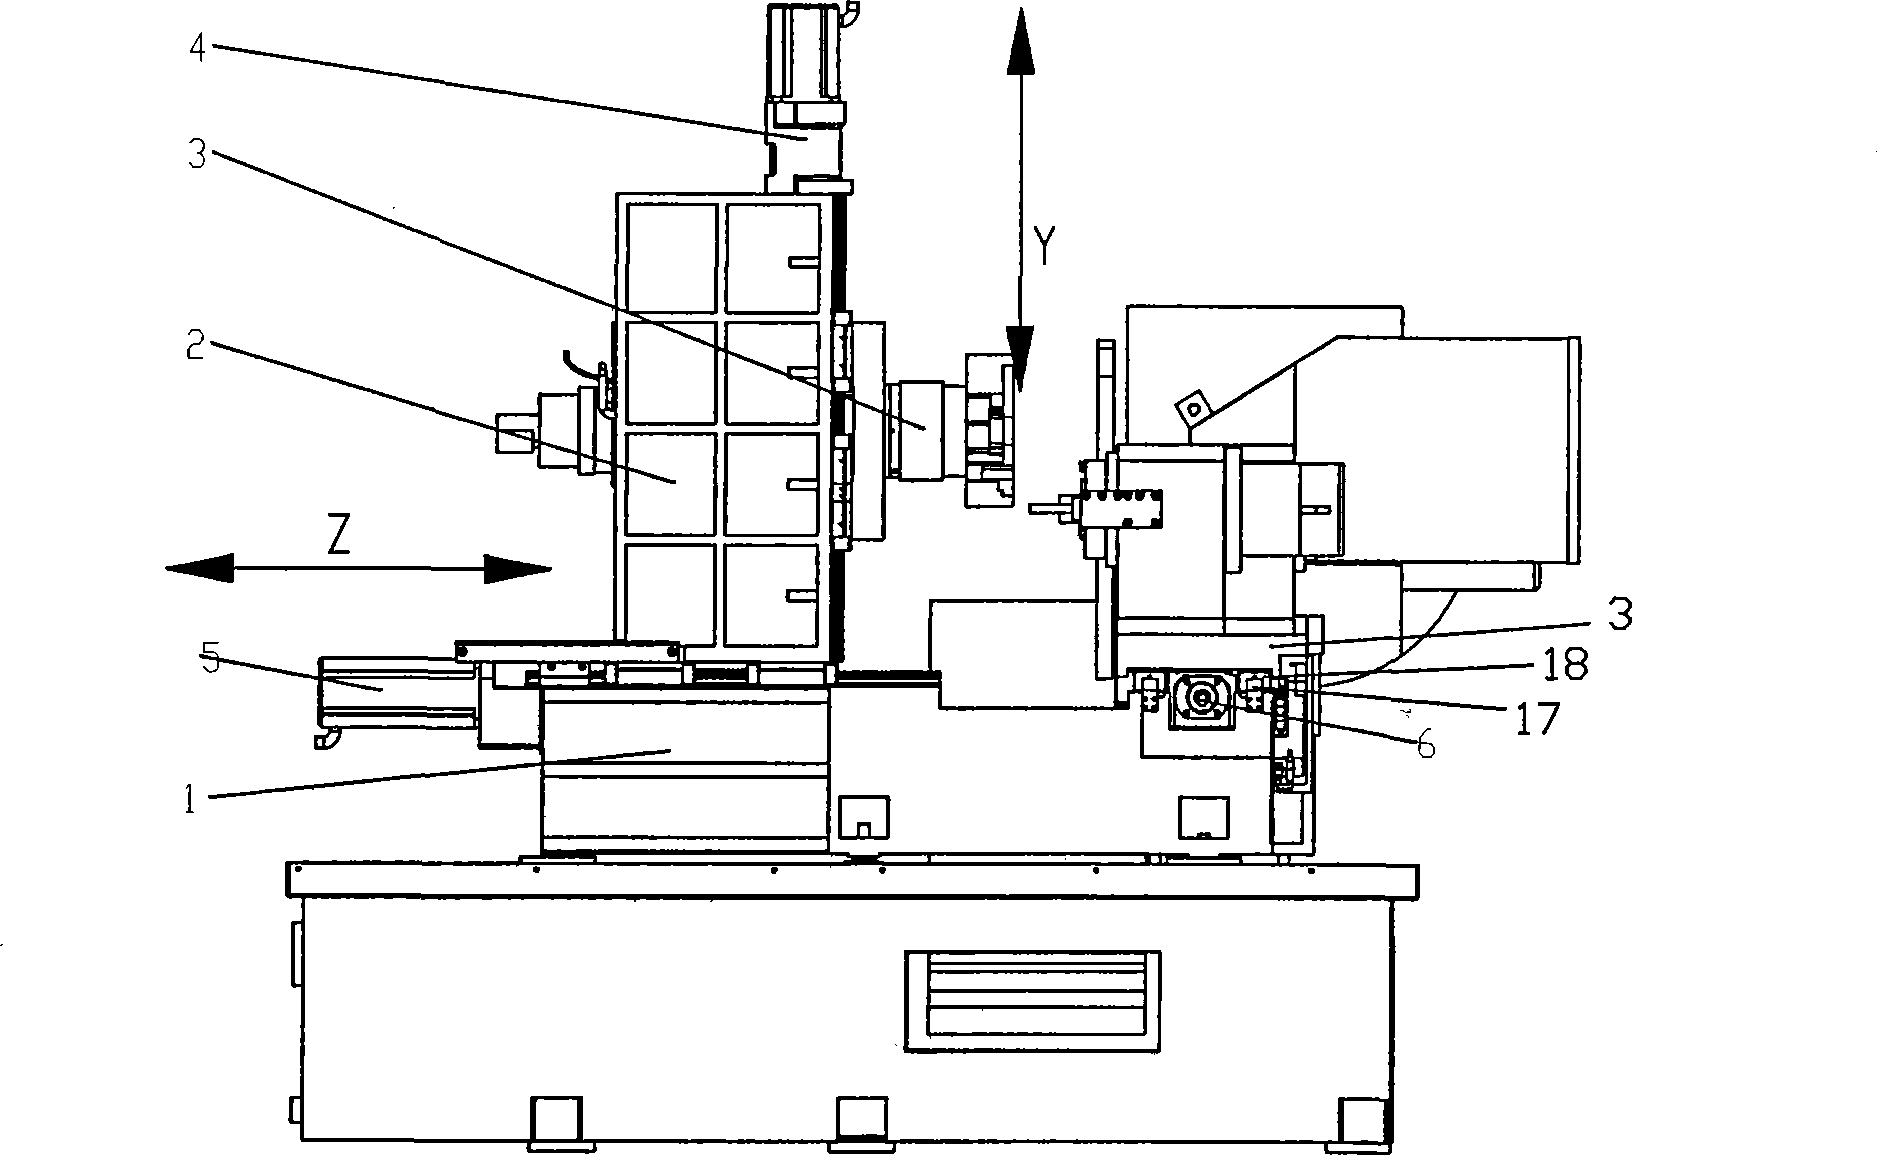 Horizontal type swirl machining center